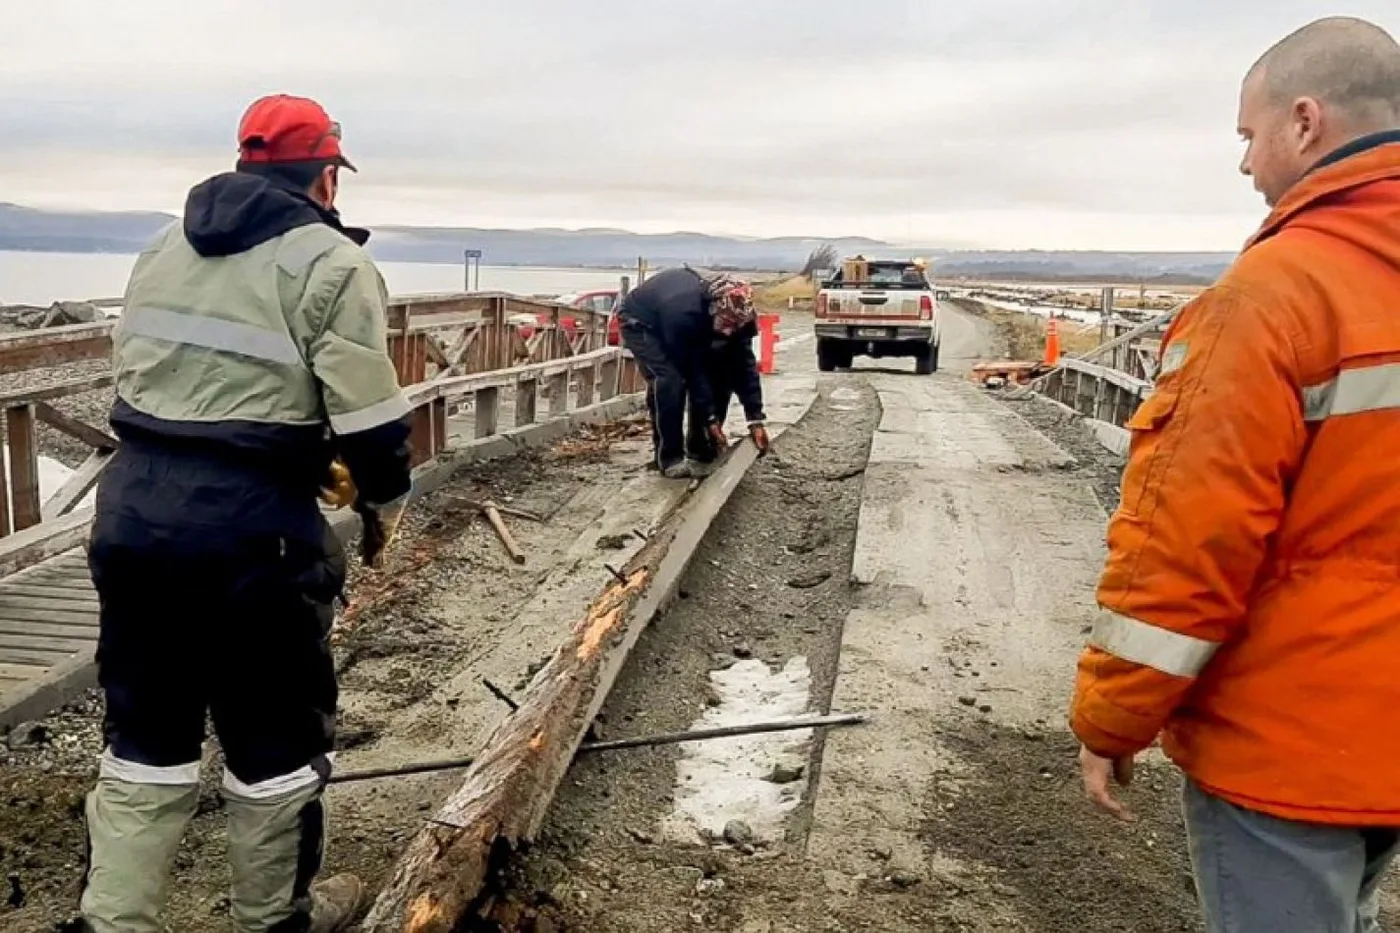 Vialidad Provincial reparó el puente y habilitó el puente "Yuco" de Tolhuin